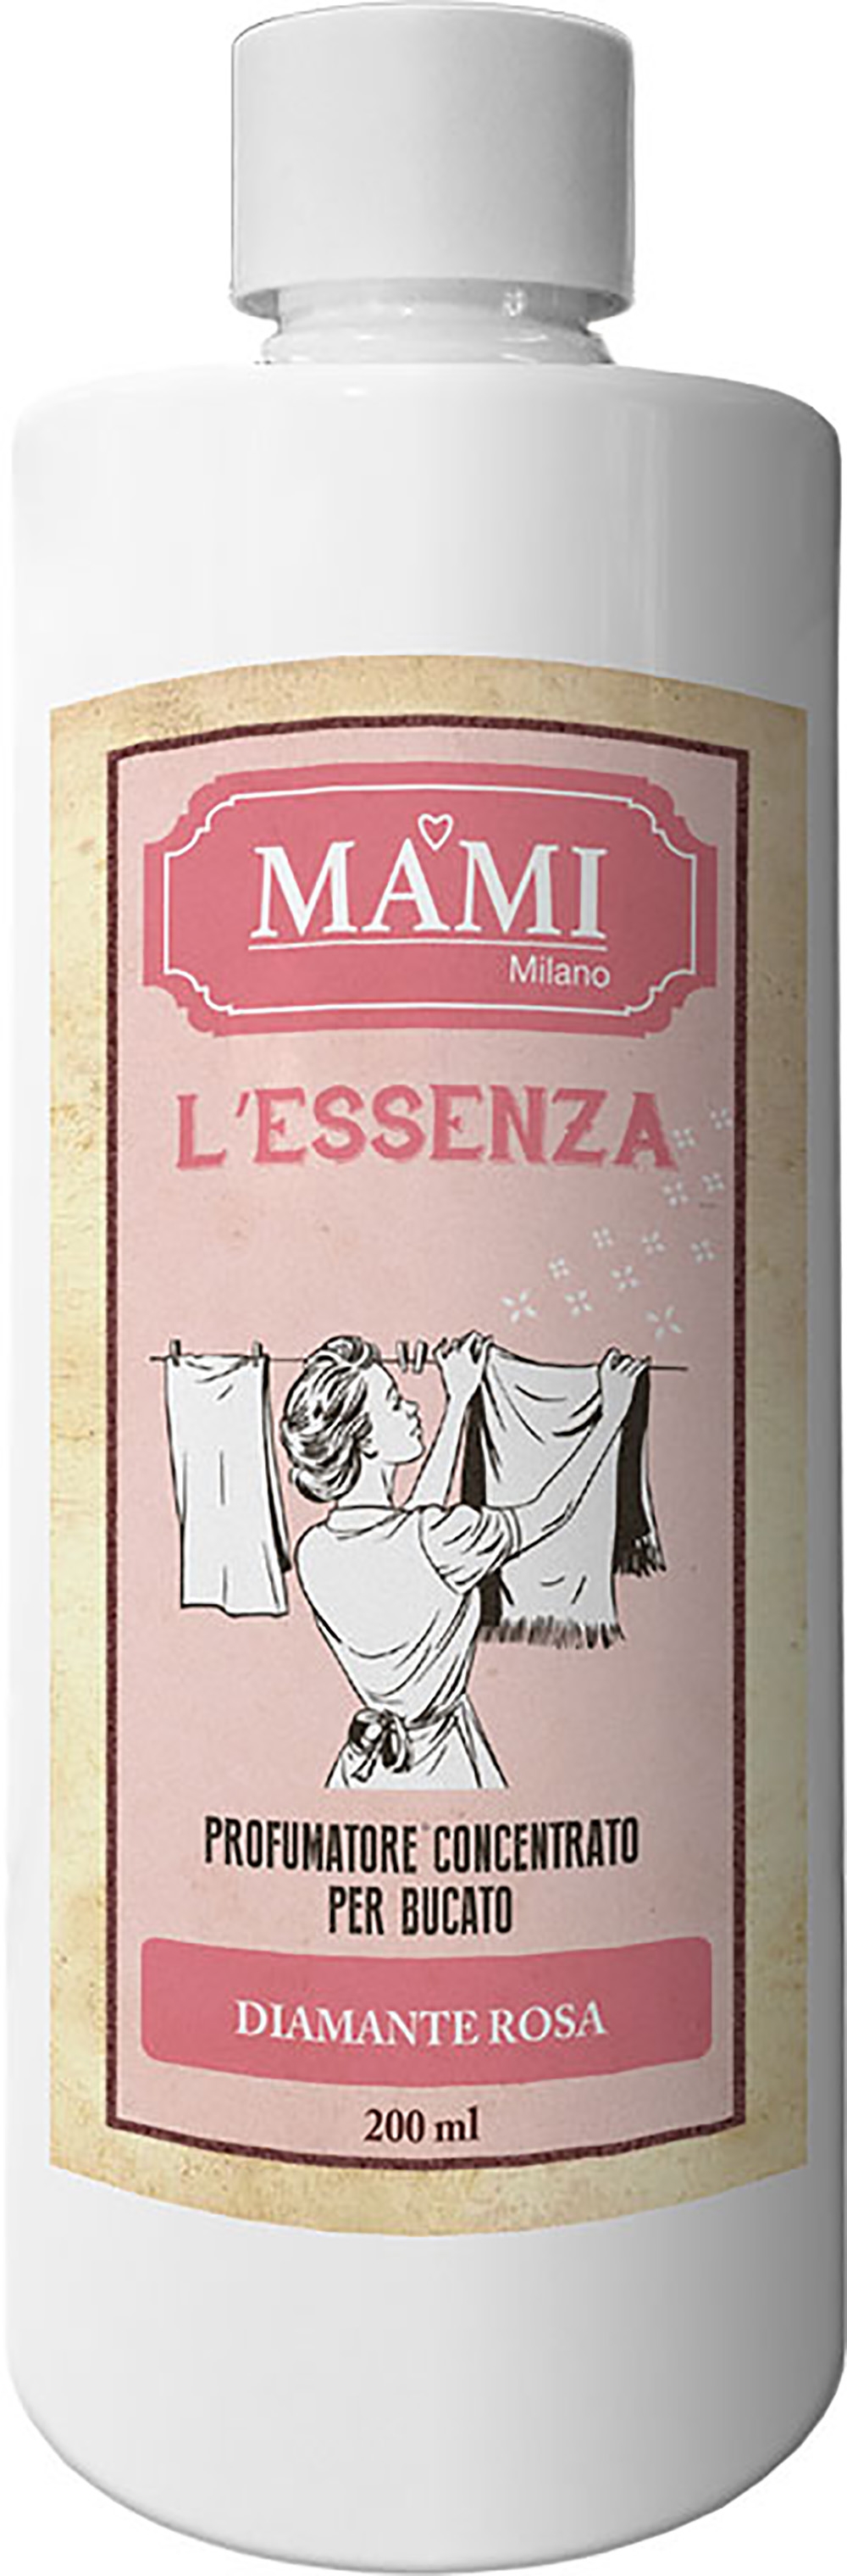 Mami Milano Bottiglia Profumatore concentrato per bucato 200ml L'Essenza